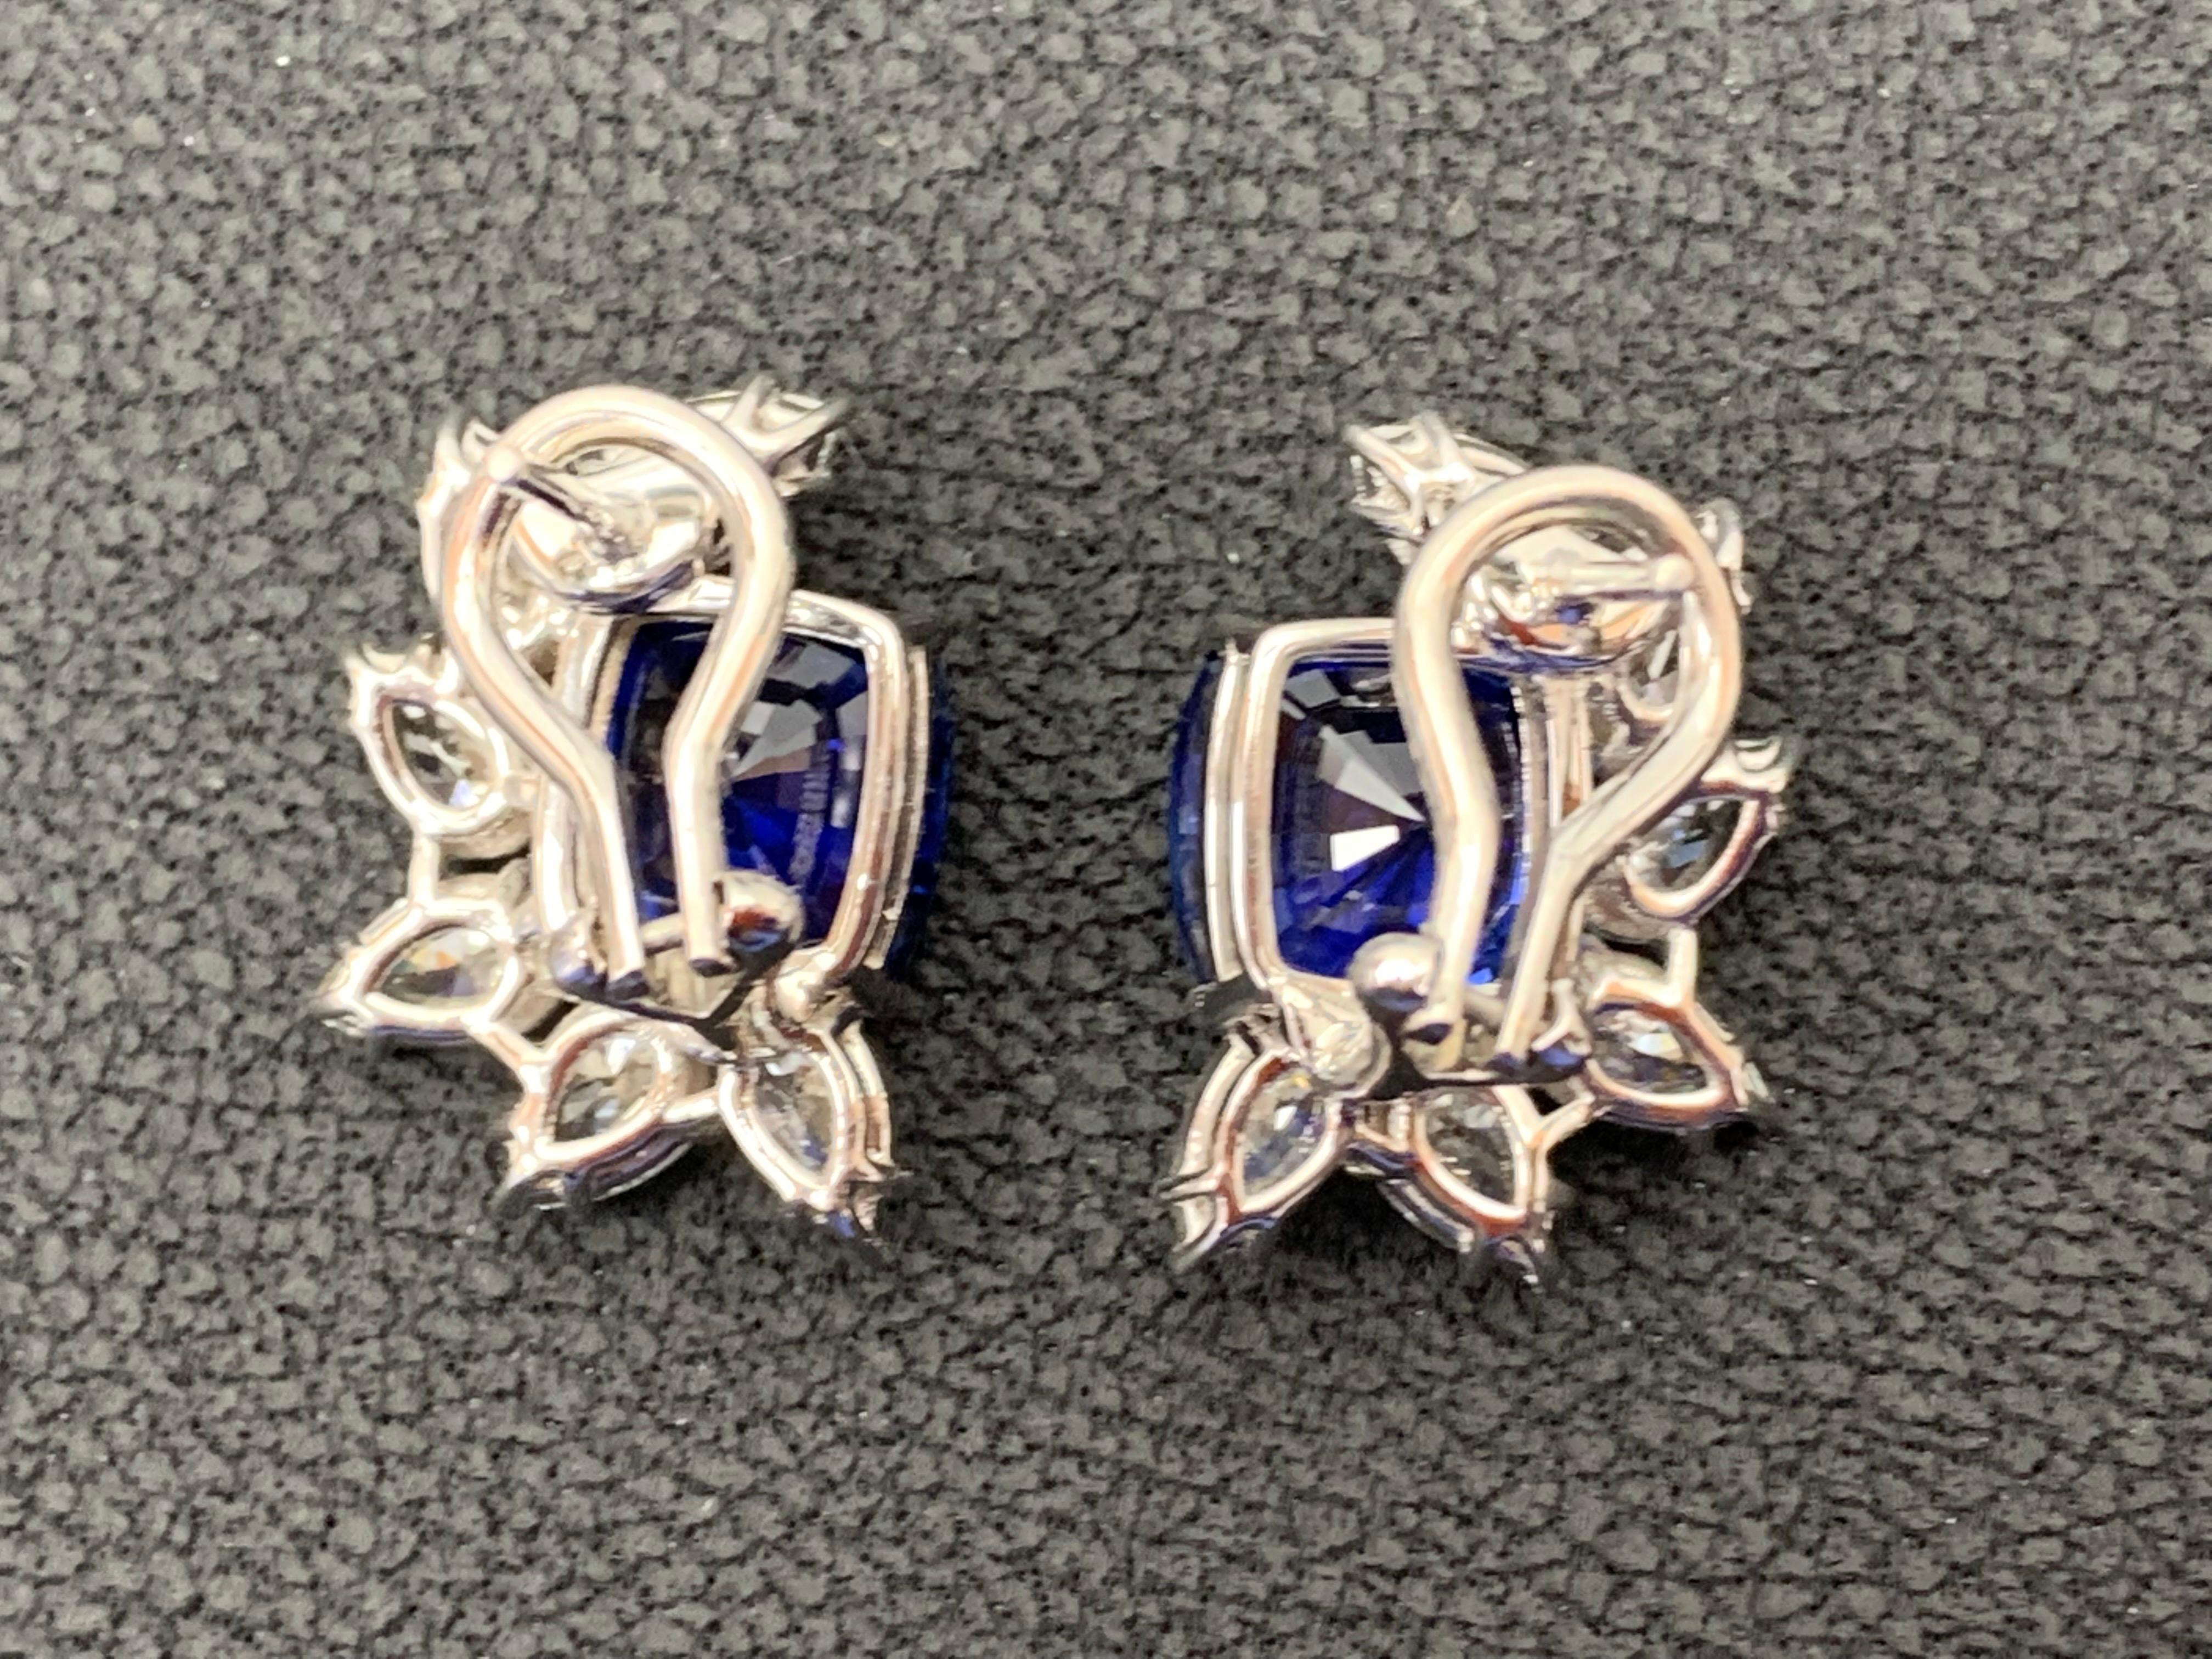 Modern Certified 7.55 Carat Cushion Cut Sapphire Diamond Cluster Earrings in 18K  For Sale